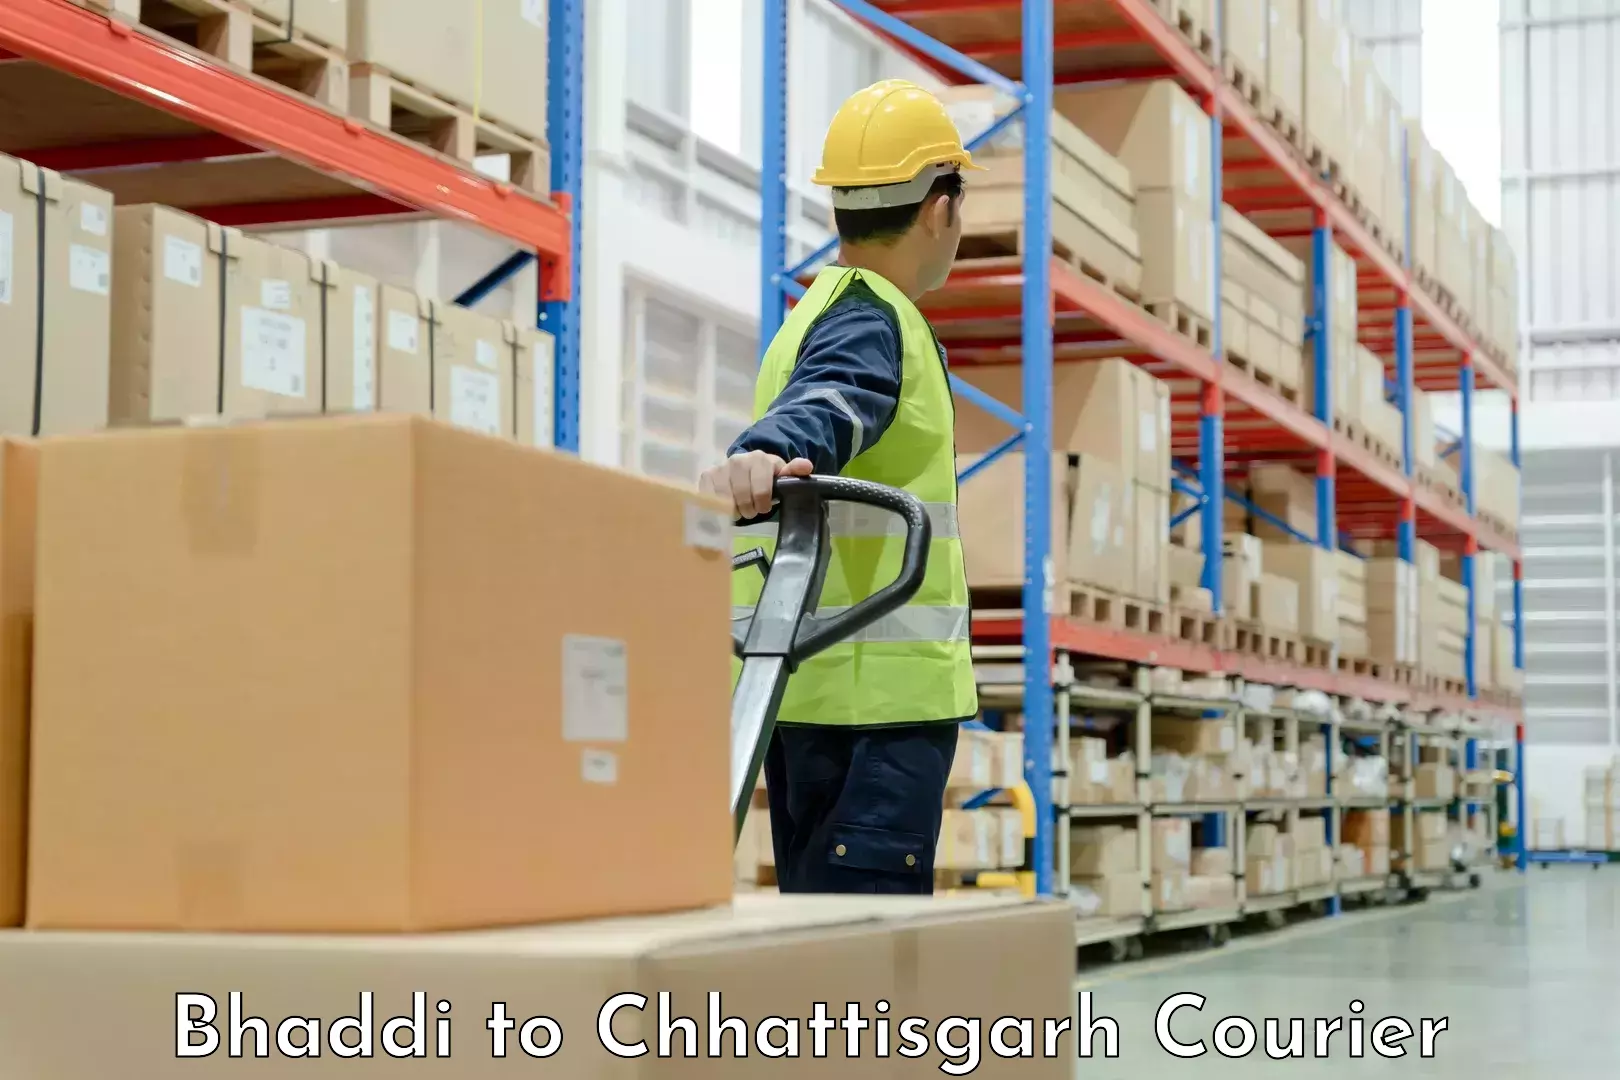 Tailored relocation services Bhaddi to Chhattisgarh